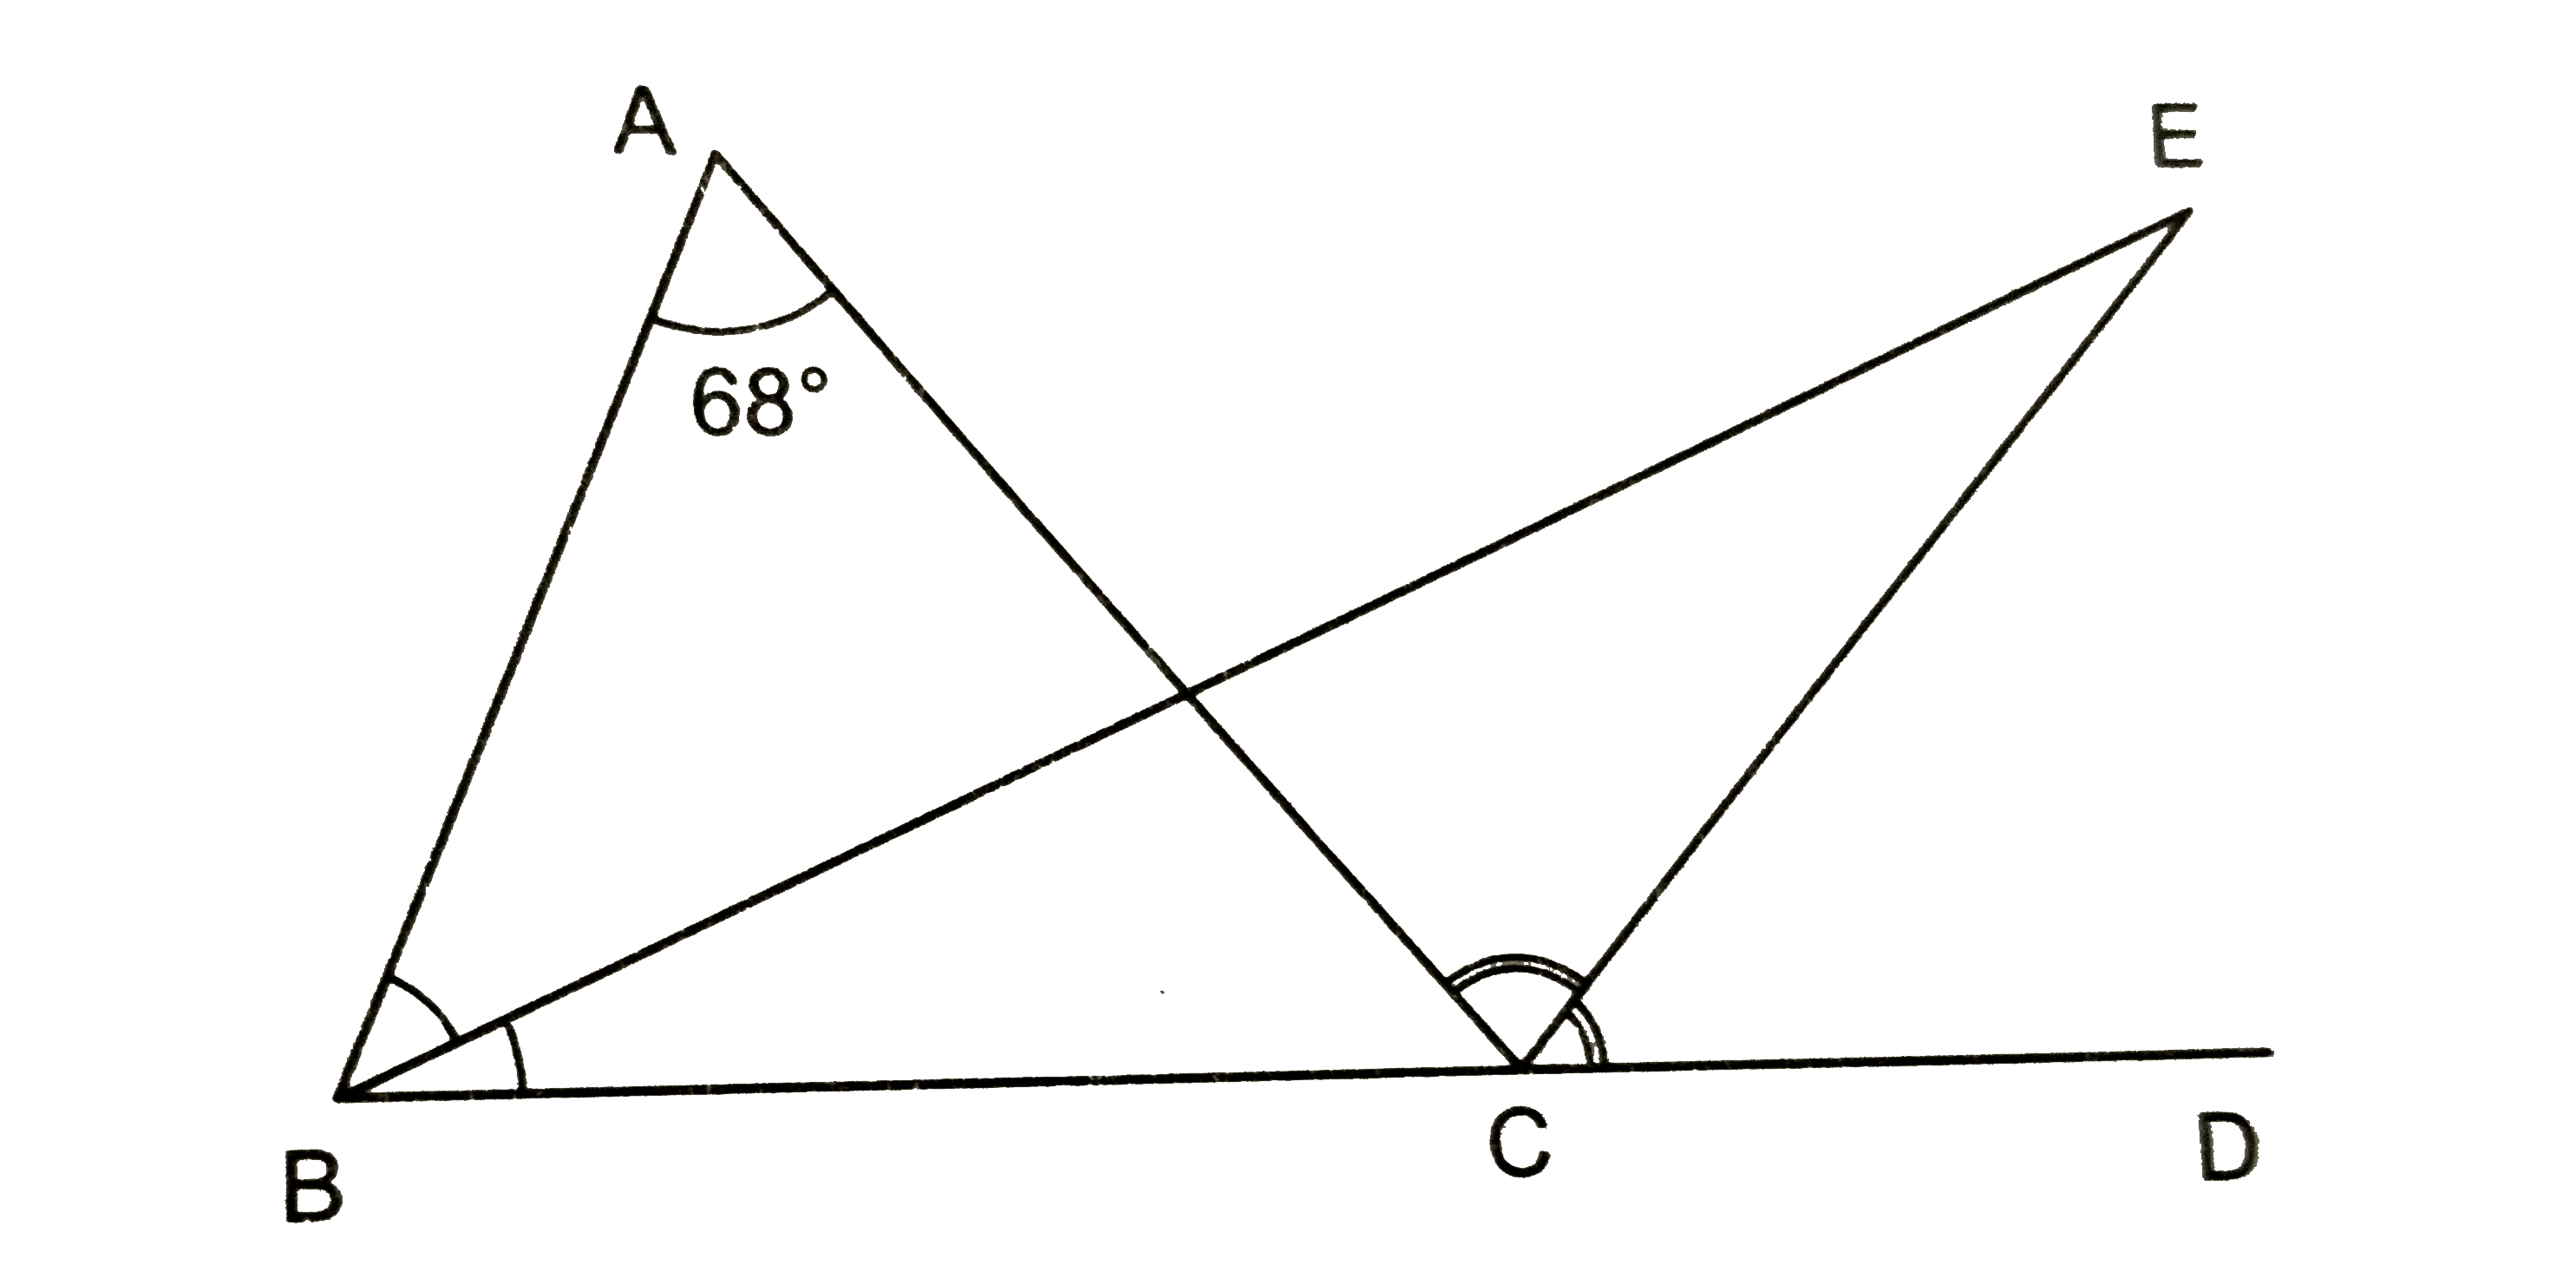 चित्र 9.42 में त्रिभुज ABC की भुजा BC को D तक बढ़ाया गया है। angleABC तथा angleACD के समद्विभाजक बिन्दु E पर काटते है। यदि angleBAC = 68^(@) हो, तो angleBEC का मान ज्ञात करो।